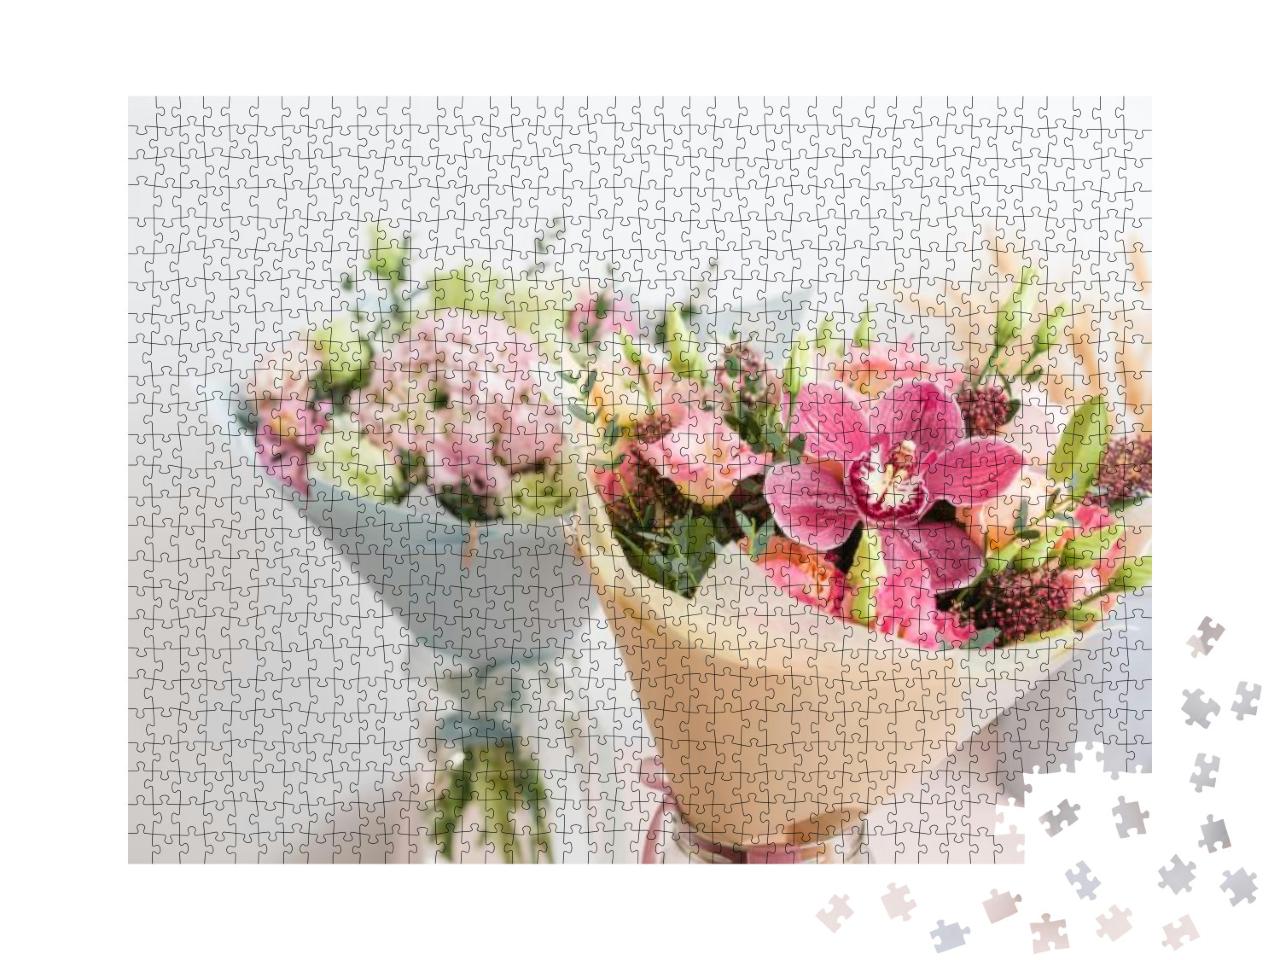 Puzzle 1000 Teile „Blumen auf Holztisch im Blumenladen“